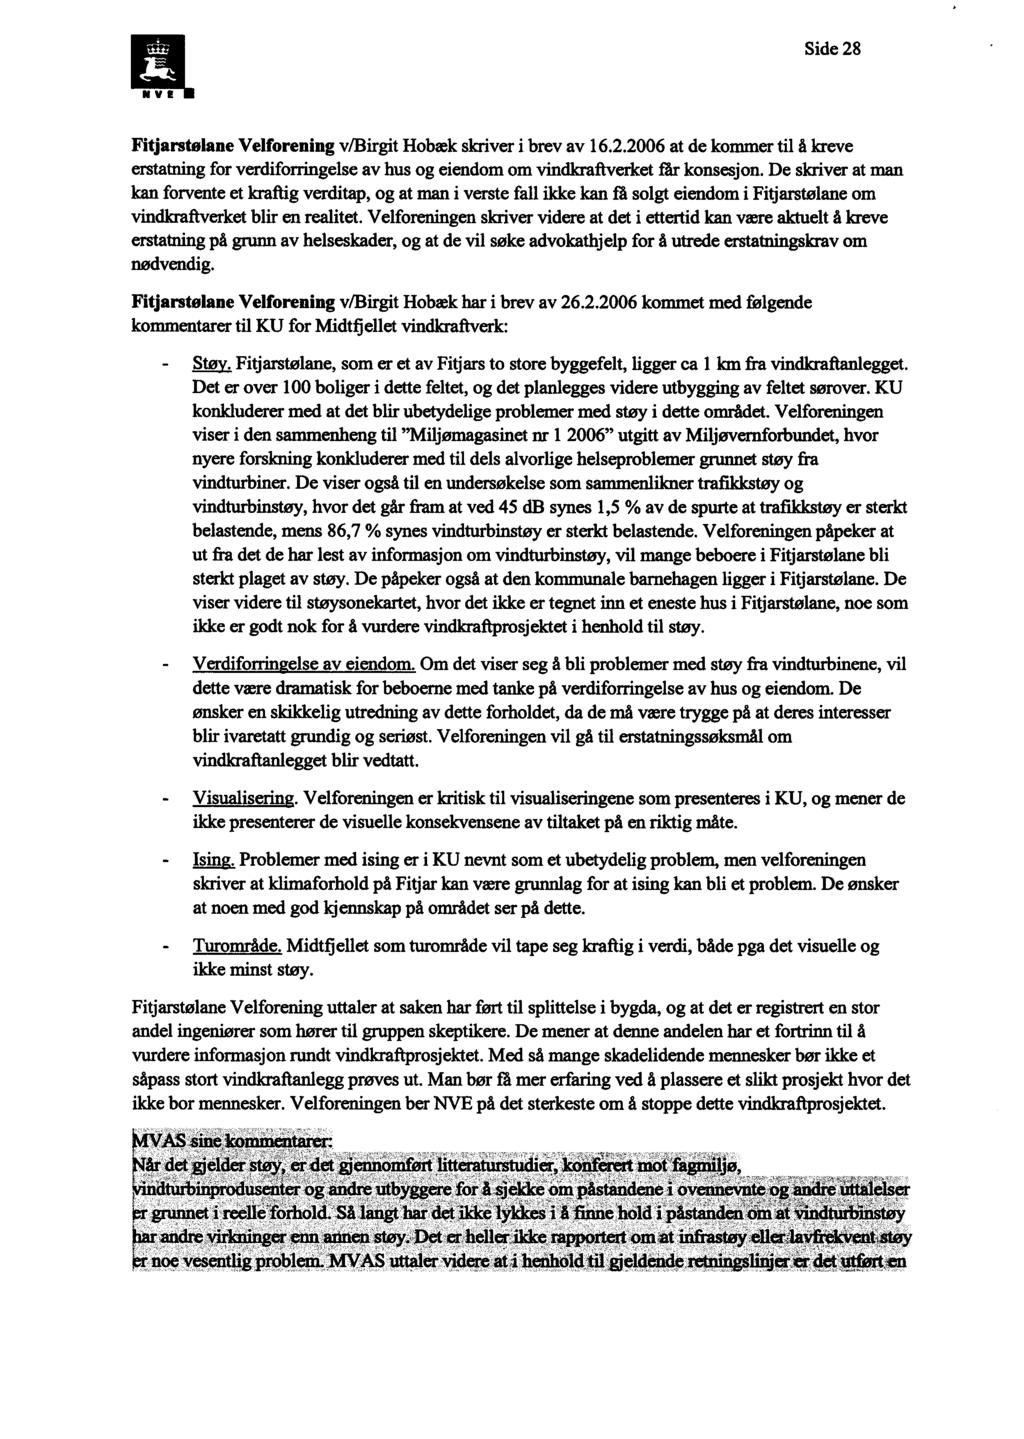 L41 Side 28 Fitjarstølane Velforening v/birgit Hobæk skriver i brev av 16.2.2006 at de kommer til å kreve erstatning for verdiforringelse av hus og eiendom om vindkraftverket får konsesjon.